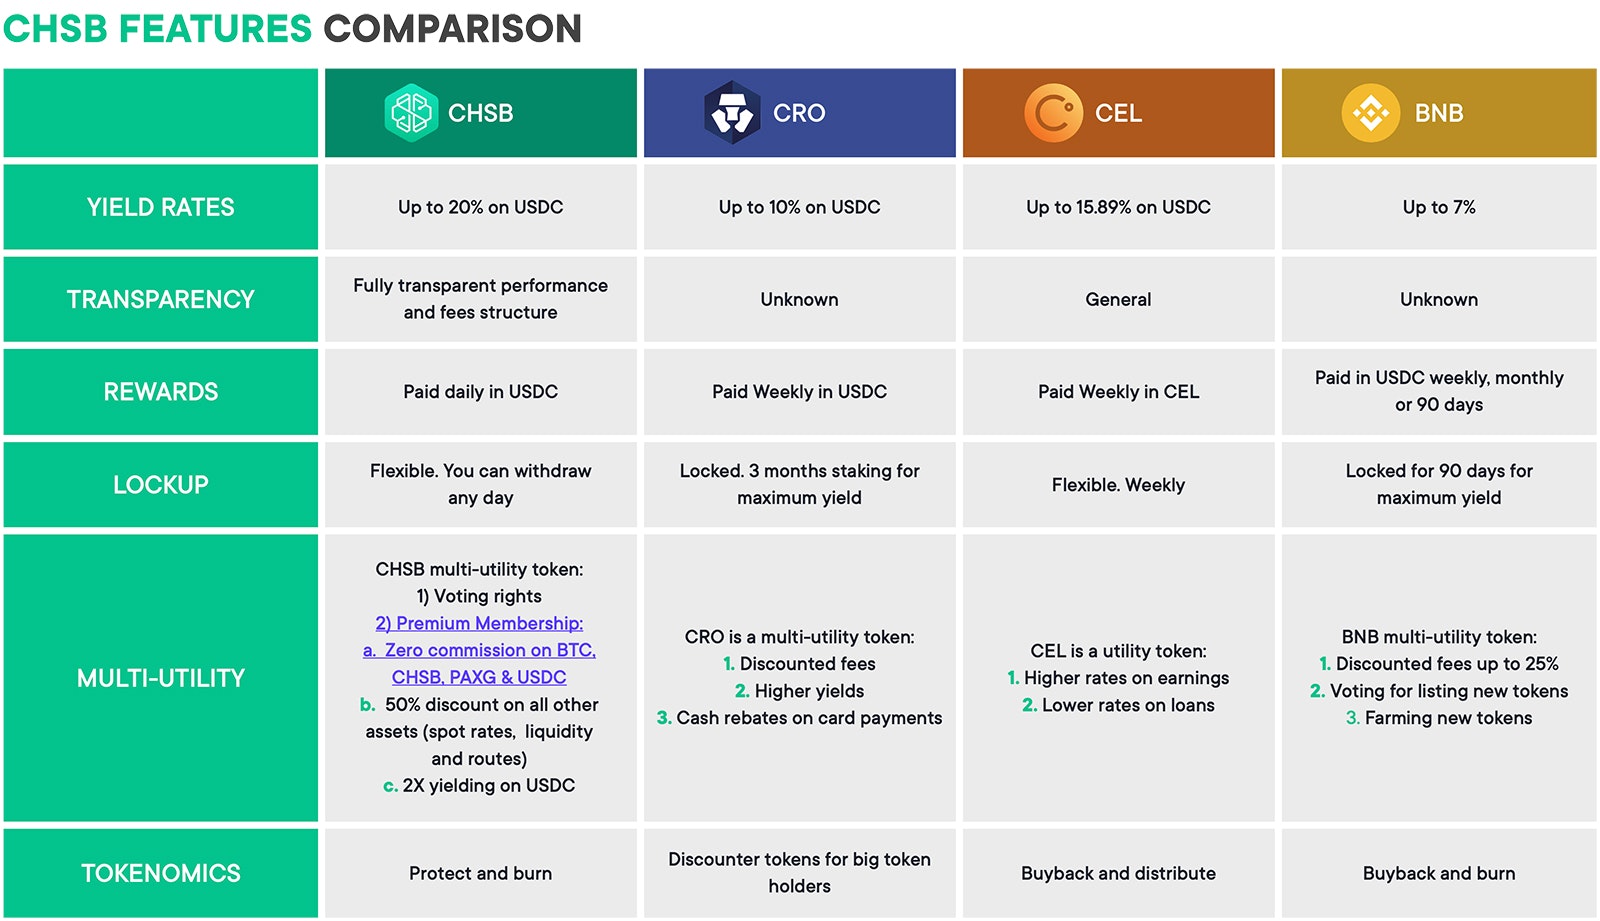 CHSB Features Comparison